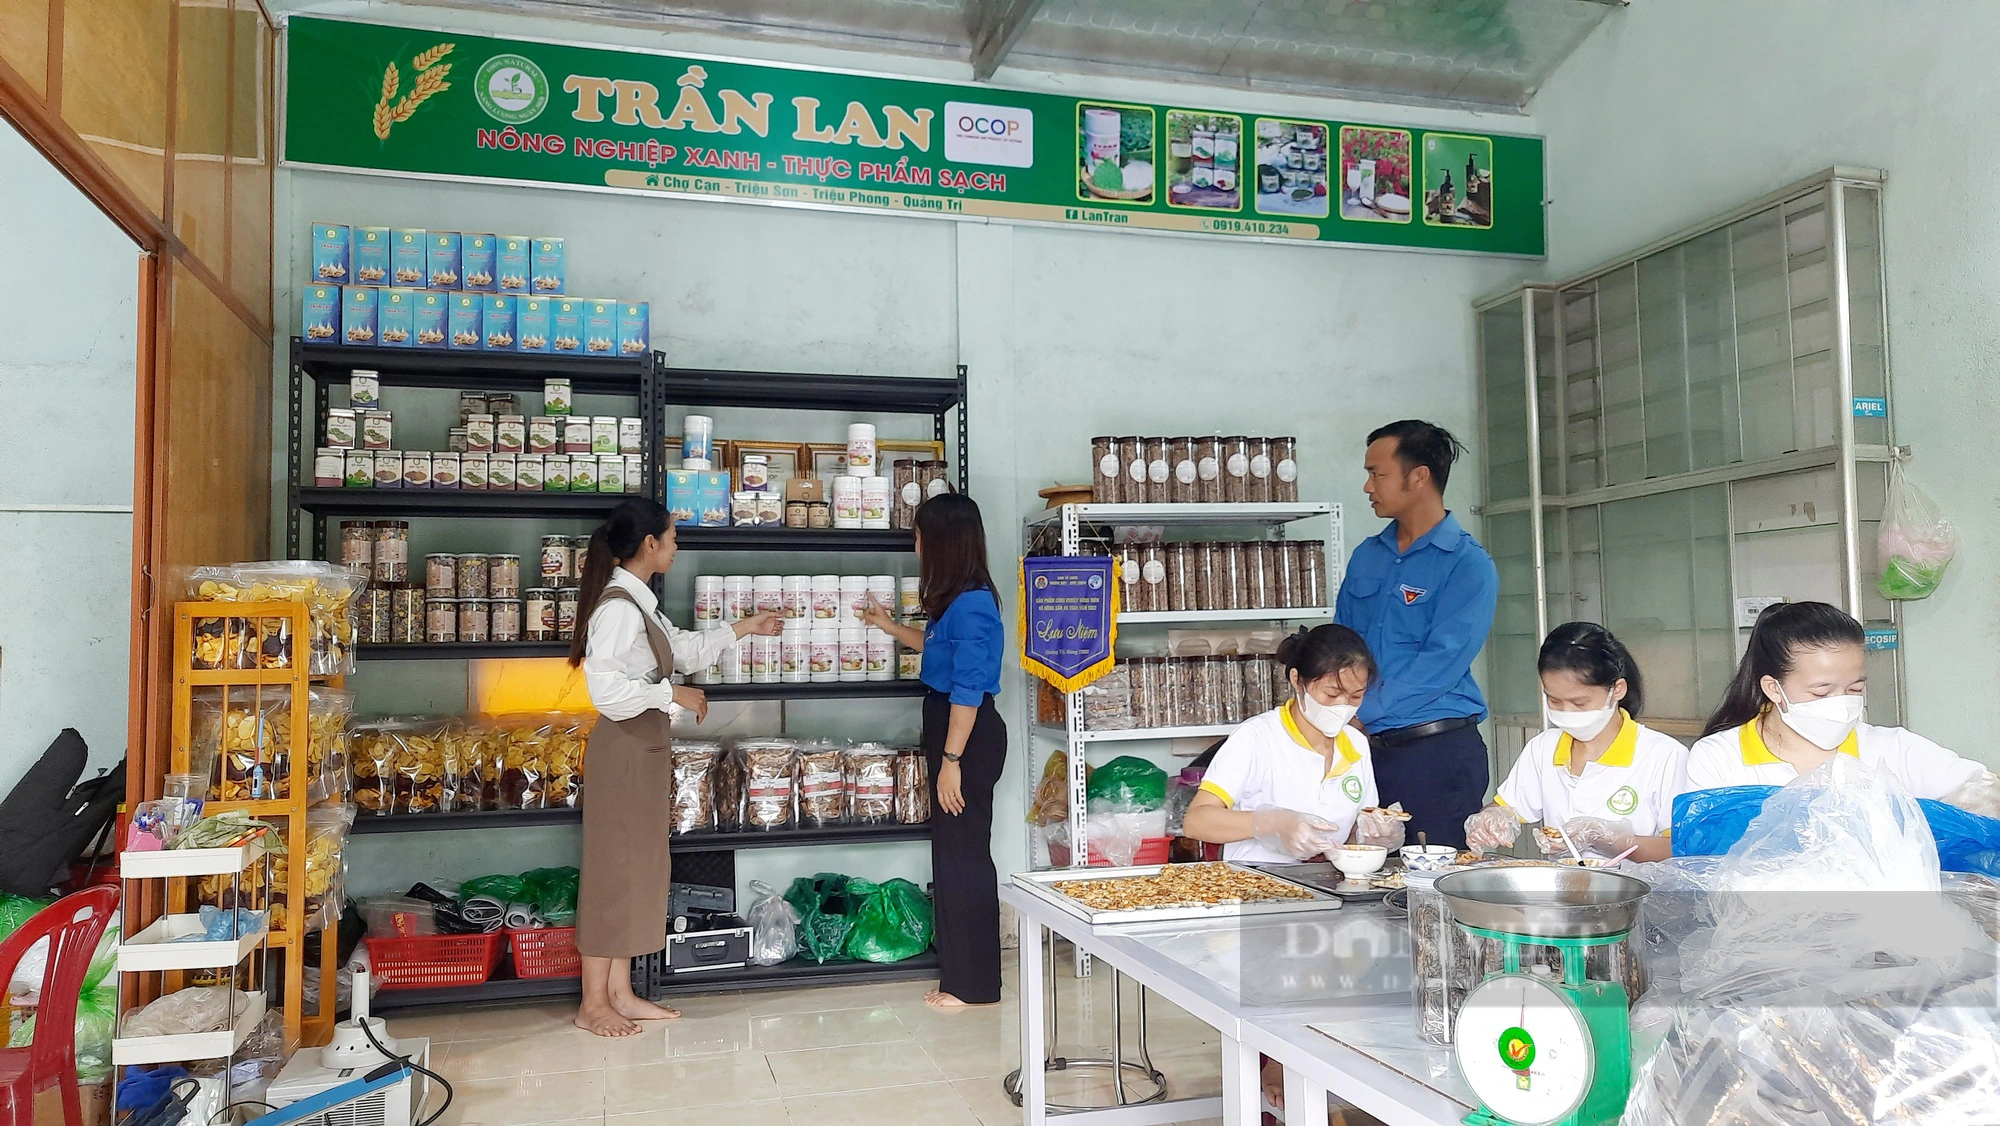 Bỏ nghề giáo viên để “sánh duyên” với thực phẩm nhà làm, người mẹ trẻ ở Quảng Trị có thu nhập mơ ước - Ảnh 4.